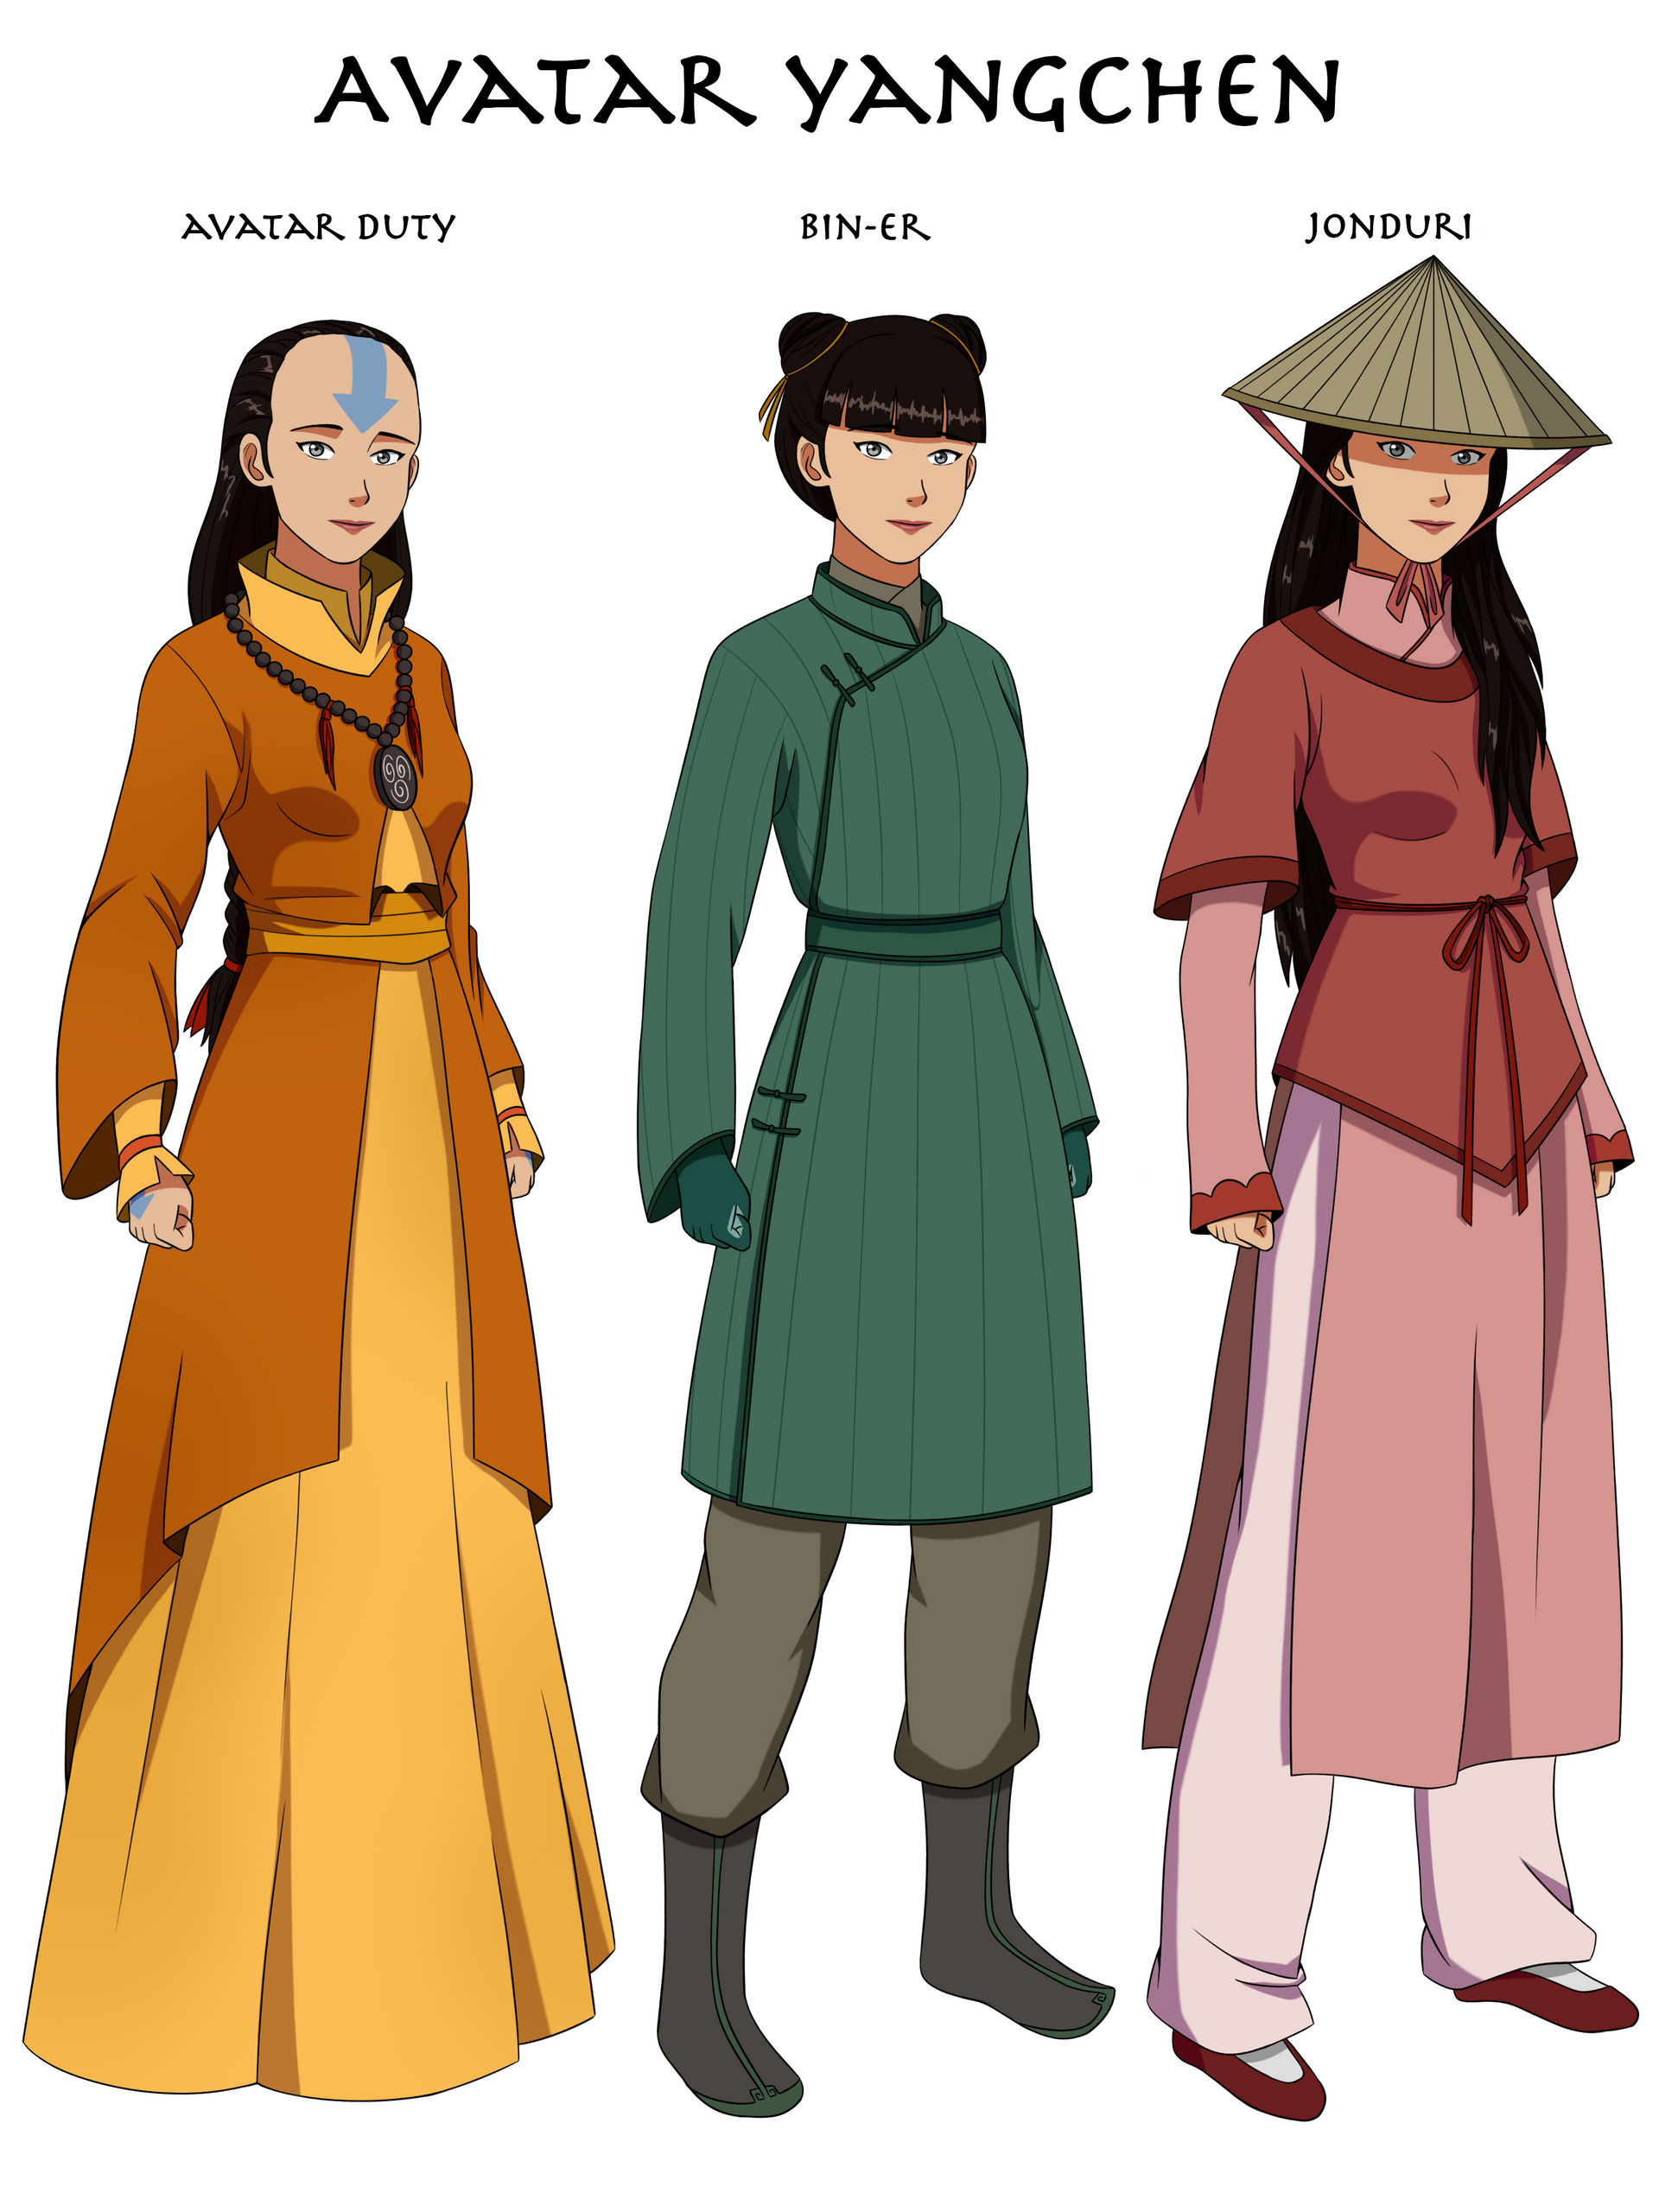 Trang phục của Yangchen: Trang phục của Yangchen trong Avatar chắc chắn sẽ khiến bạn trầm trồ với sự tinh tế, độc đáo và rất ấn tượng. Với chiếc áo trắng tinh khôi và chi tiết phong phú được hoạ tiết độc đáo, bạn sẽ muốn khám phá chi tiết từng đường nét của trang phục này. Hãy nhanh chóng đón xem hình ảnh liên quan để không bỏ lỡ bất kỳ chi tiết nào!